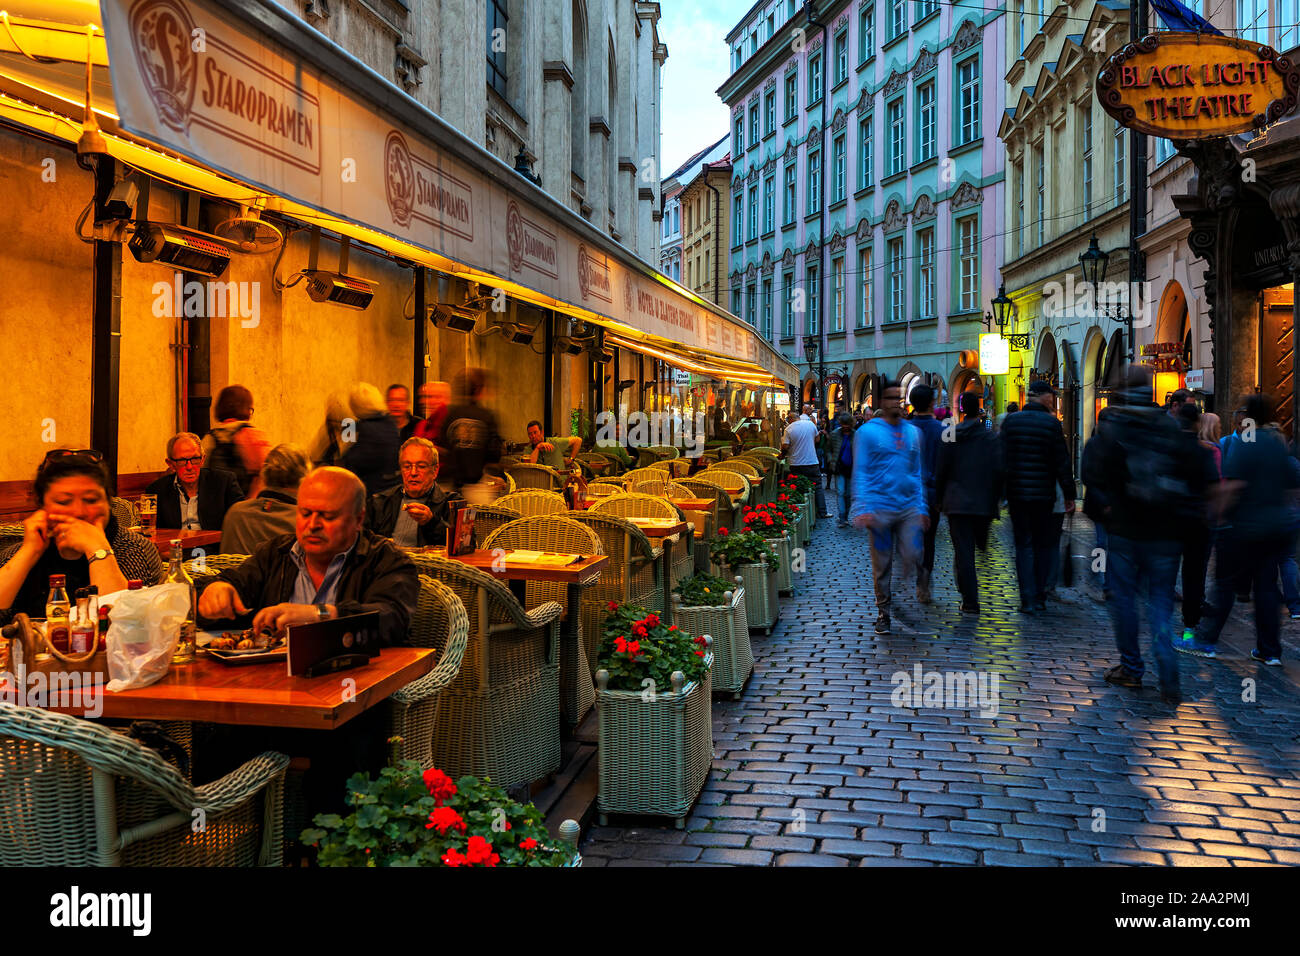 Menschen in beleuchteten Outdoor Restaurant sitzt neben Menge Straße mit Kopfsteinpflaster in der Altstadt von Prag. Stockfoto